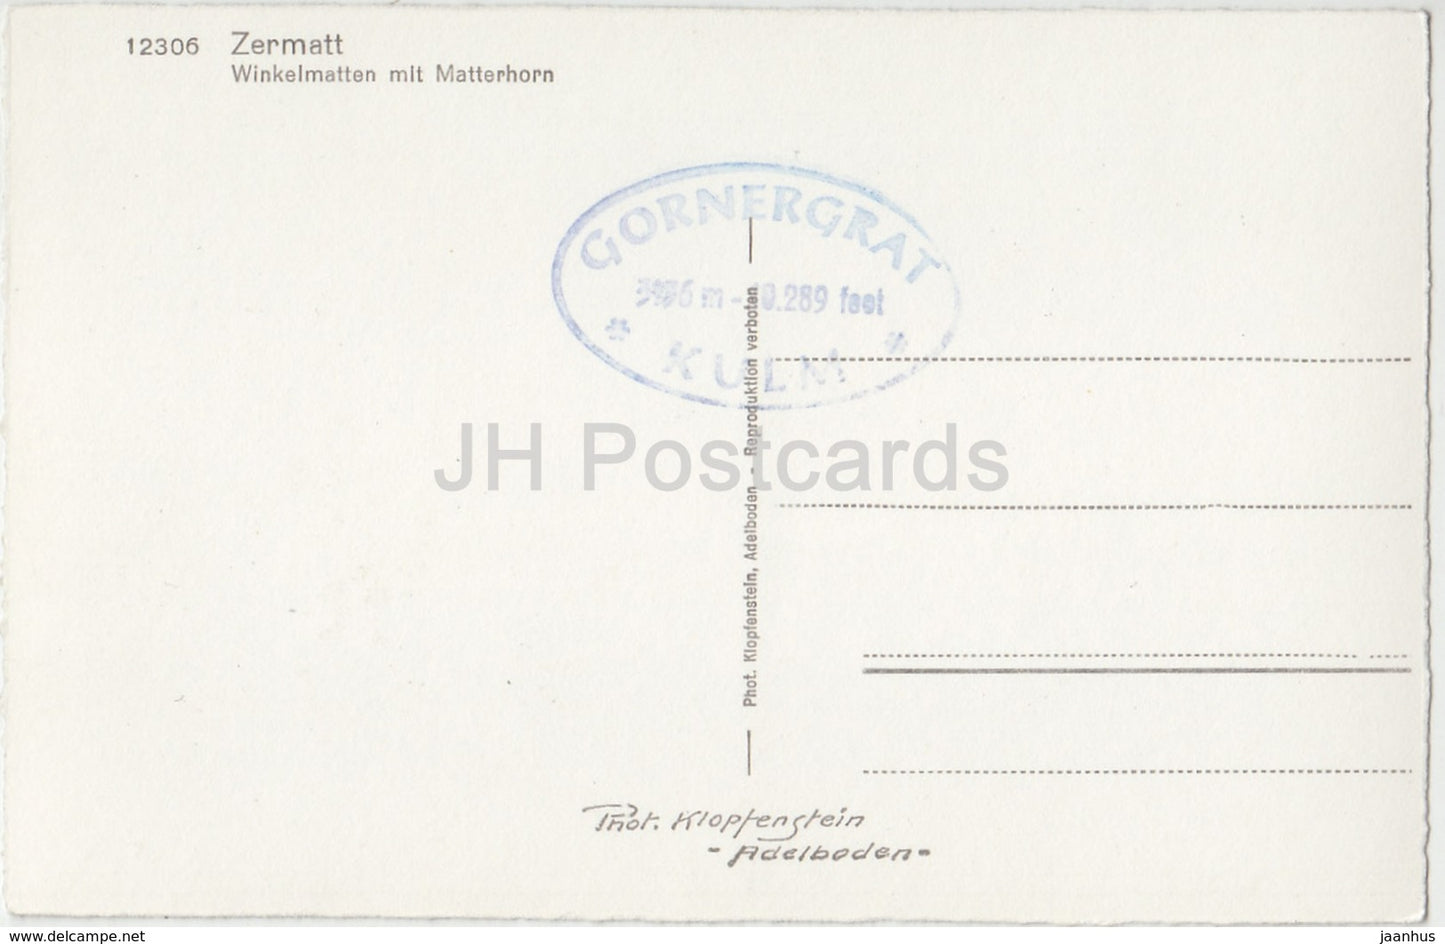 Zermatt - Winkelmatten mit Mattehorn - 12306 - Suisse - carte postale ancienne - inutilisée